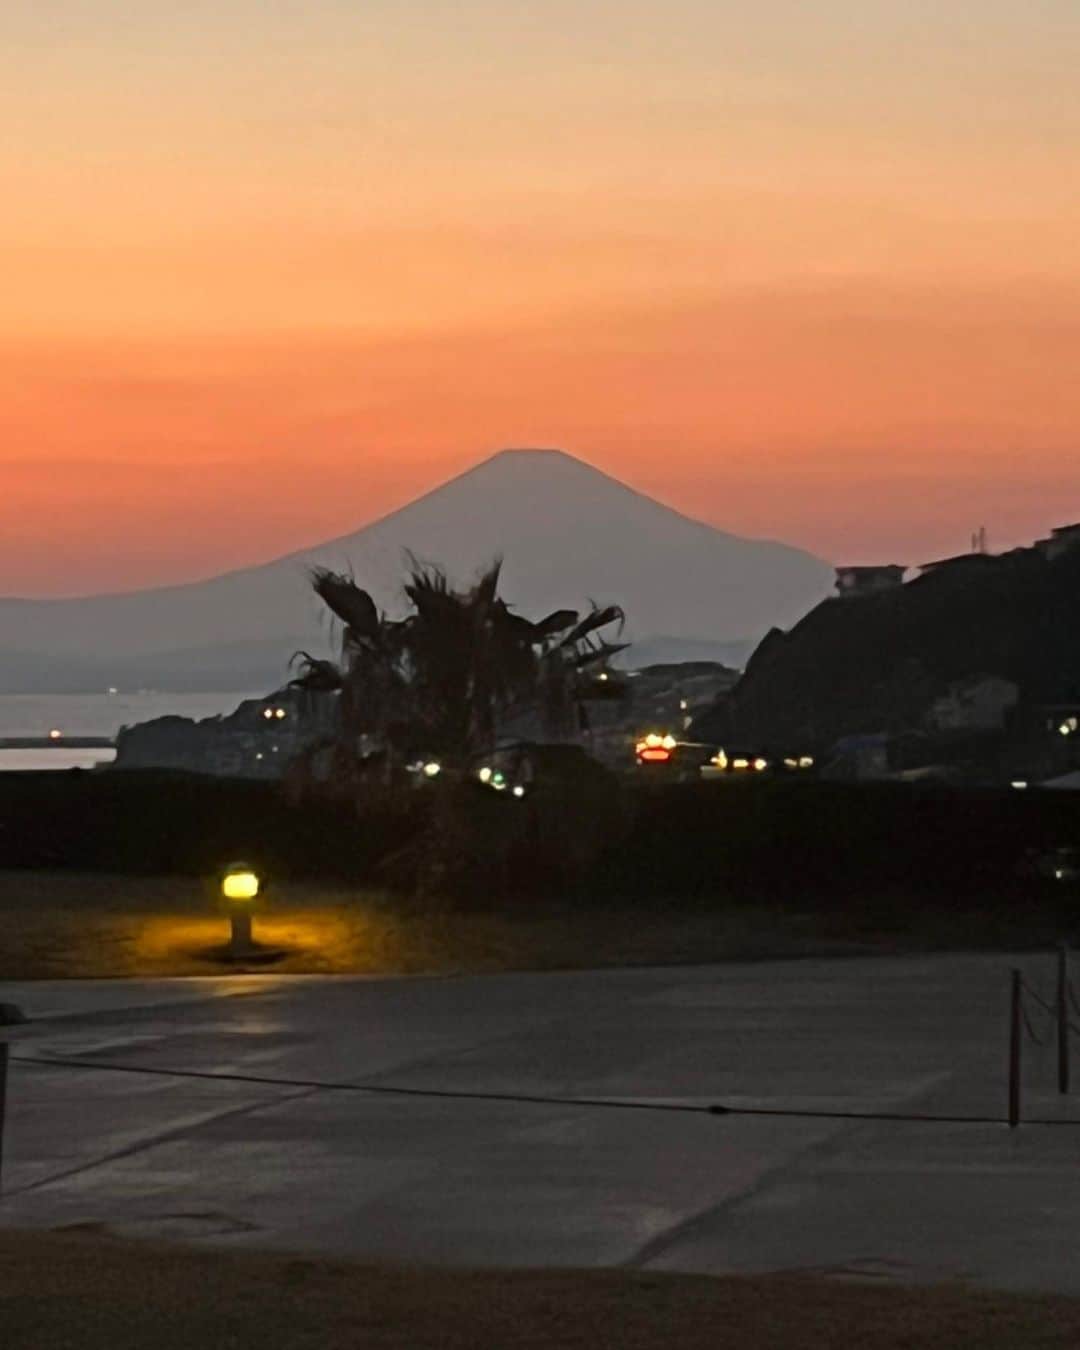 羽田美智子のインスタグラム：「今夜は満月ですね🌕  お仕事で訪れた江ノ島で夕暮れの富士山のシルエットと満月の煌めきに 癒されてます✨✨  満月を写真に撮るって難しいですが💦 まだご覧になってない方に届けーと思い撮ってみました。  もうご覧になってらっしゃるかもしれませんが、 どこかで空を眺めてみてくださいね❣️ 美しい満月です🌕  皆様に素敵なことがたくさんありますように❣️」